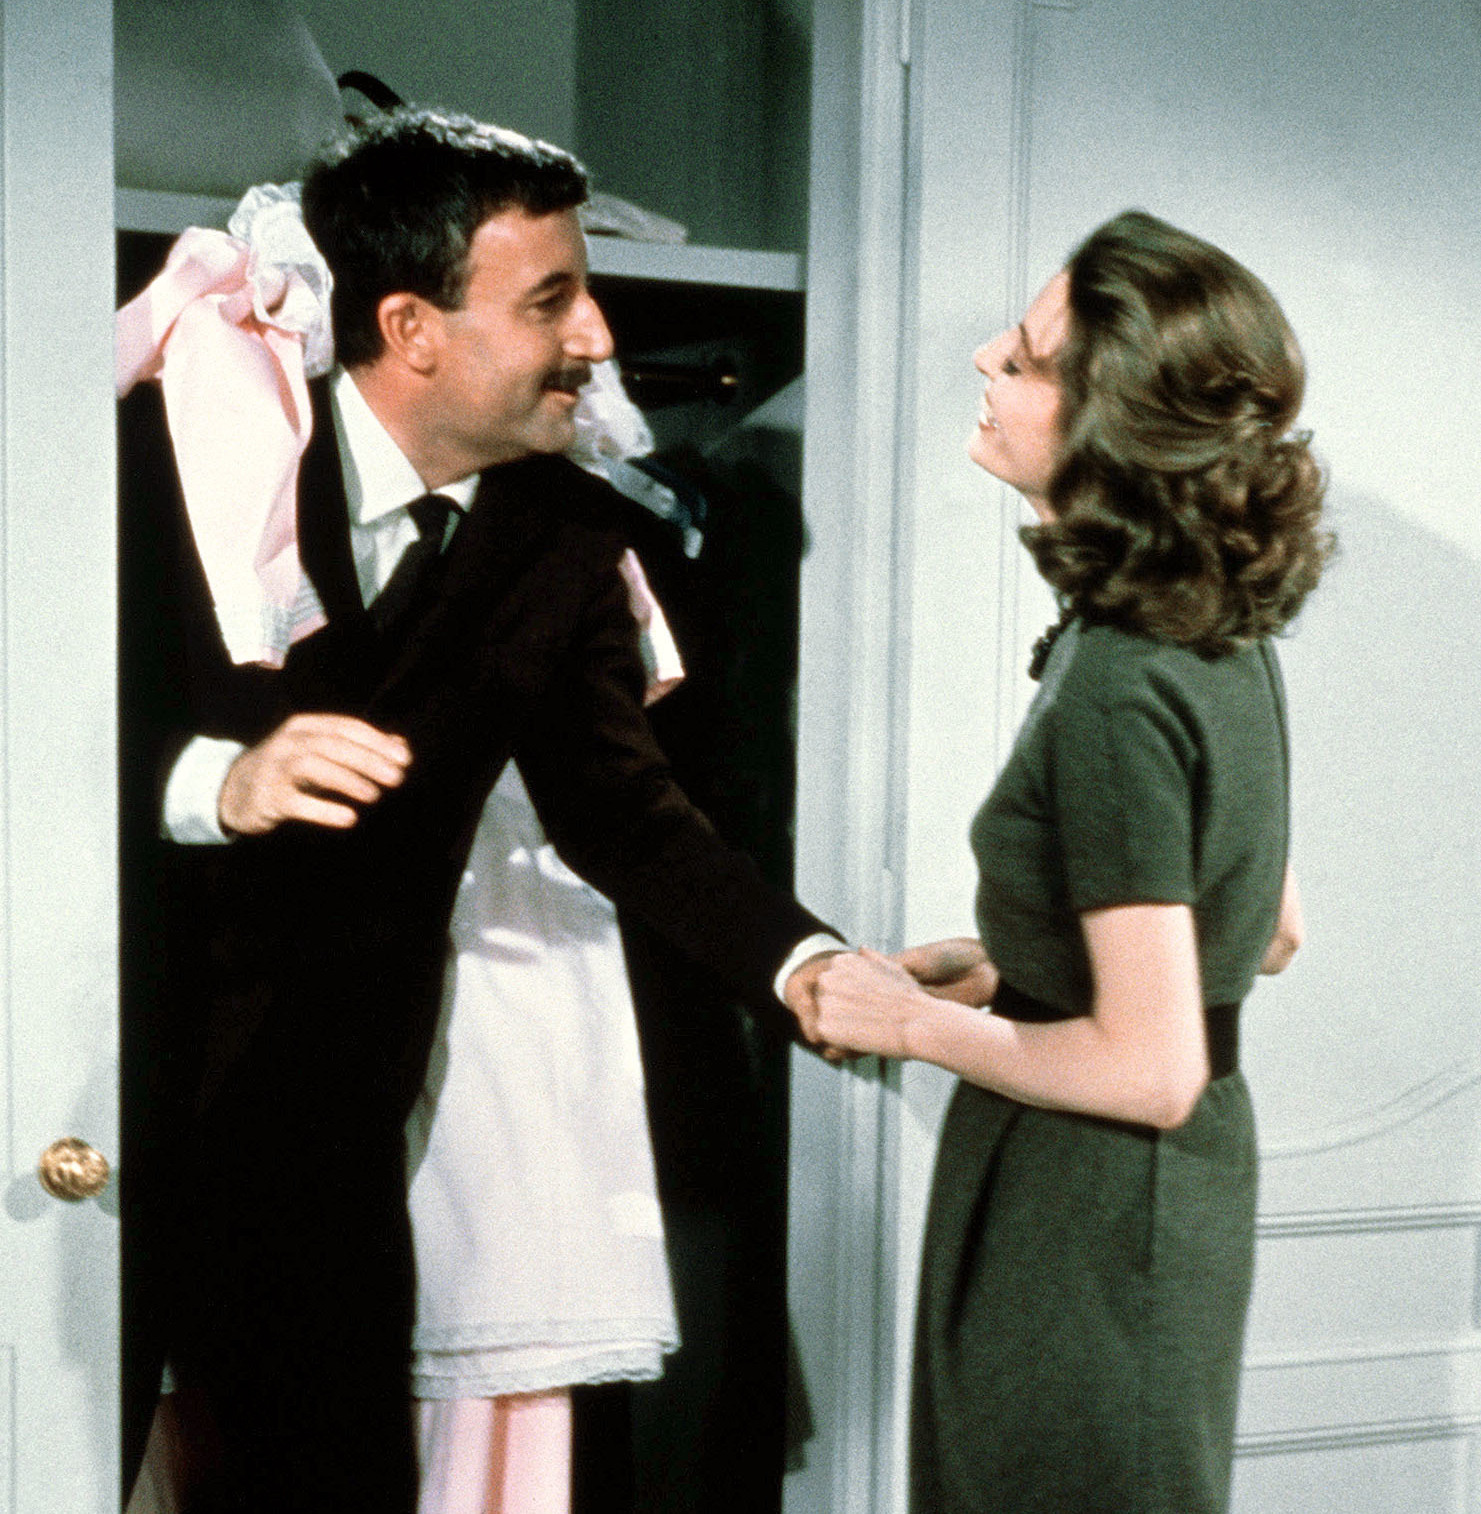 Inspektor Clouseau (Peter Sellers) ist mit kleidern übersäht und steht in der Tür eines Wandschranks, seine Frau Simone (Capucine) steht ihm gegenüber.